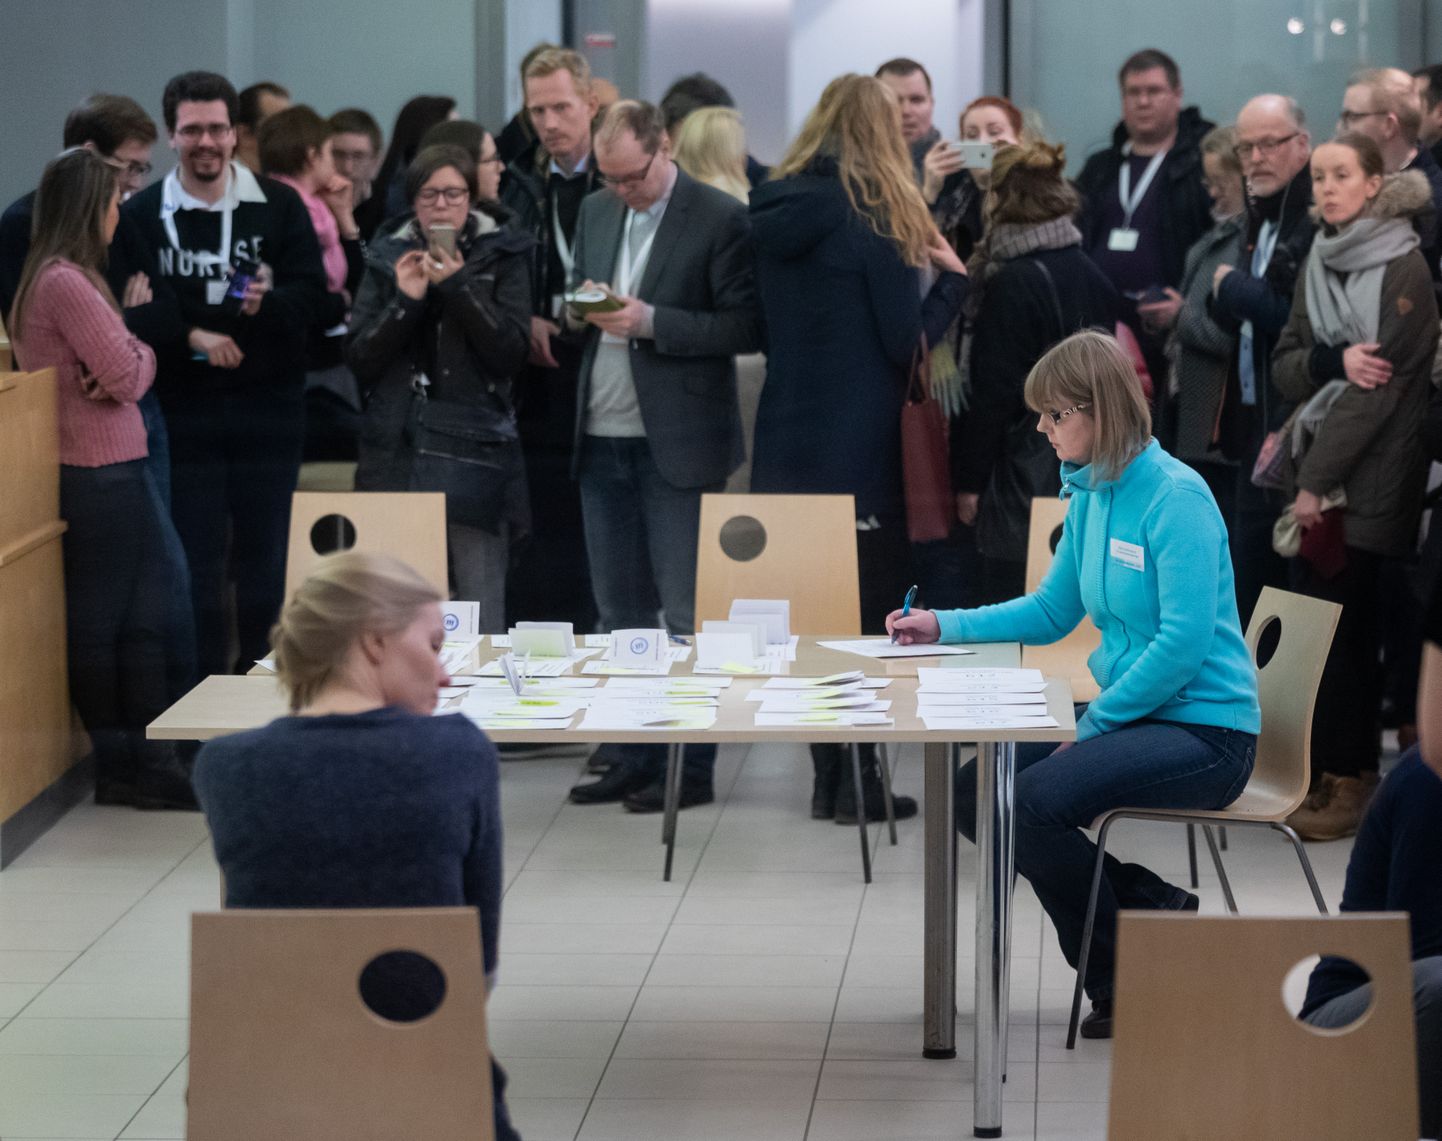 Riigikogu valimised. Häälte lugemine Tallinna linnavalitsuse teenindussaalis asuvas valimisjaoskonnas.